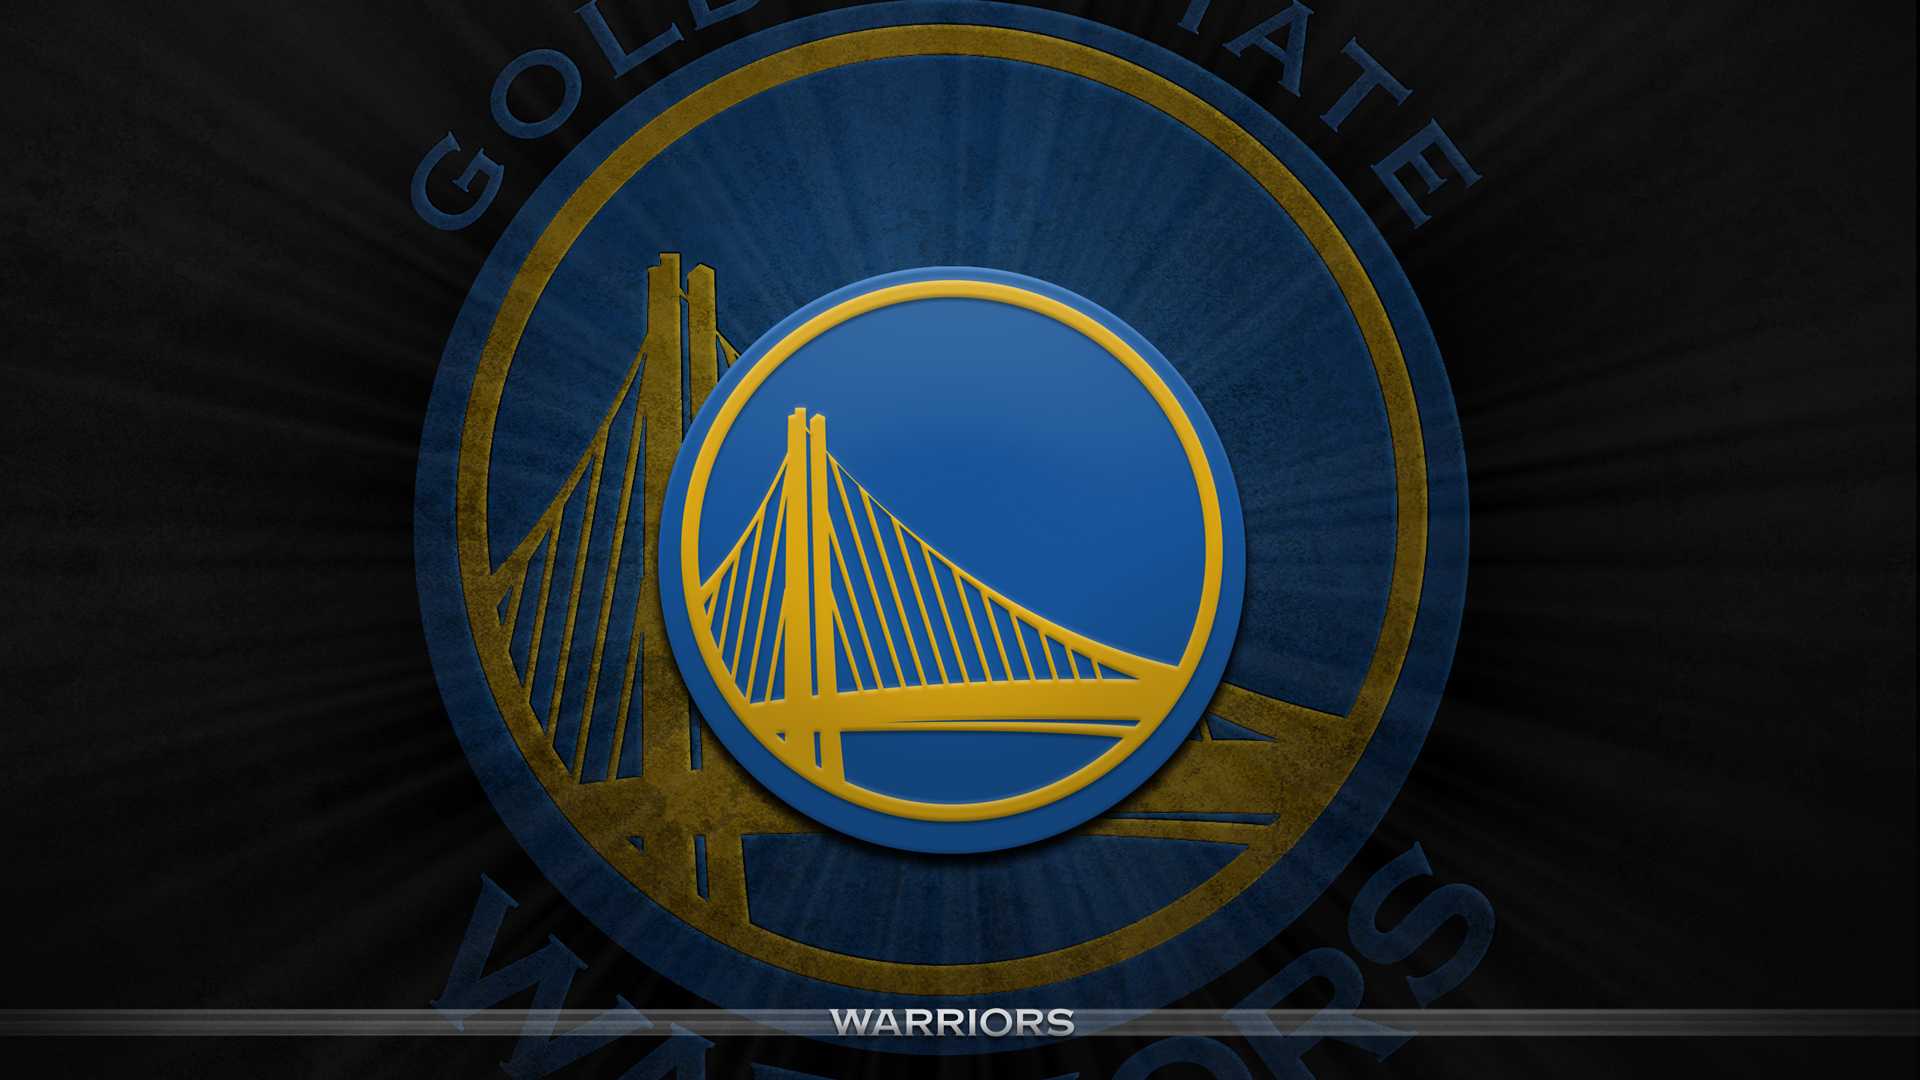 Golden State Warriors High Definition Widescreen Wallpaper